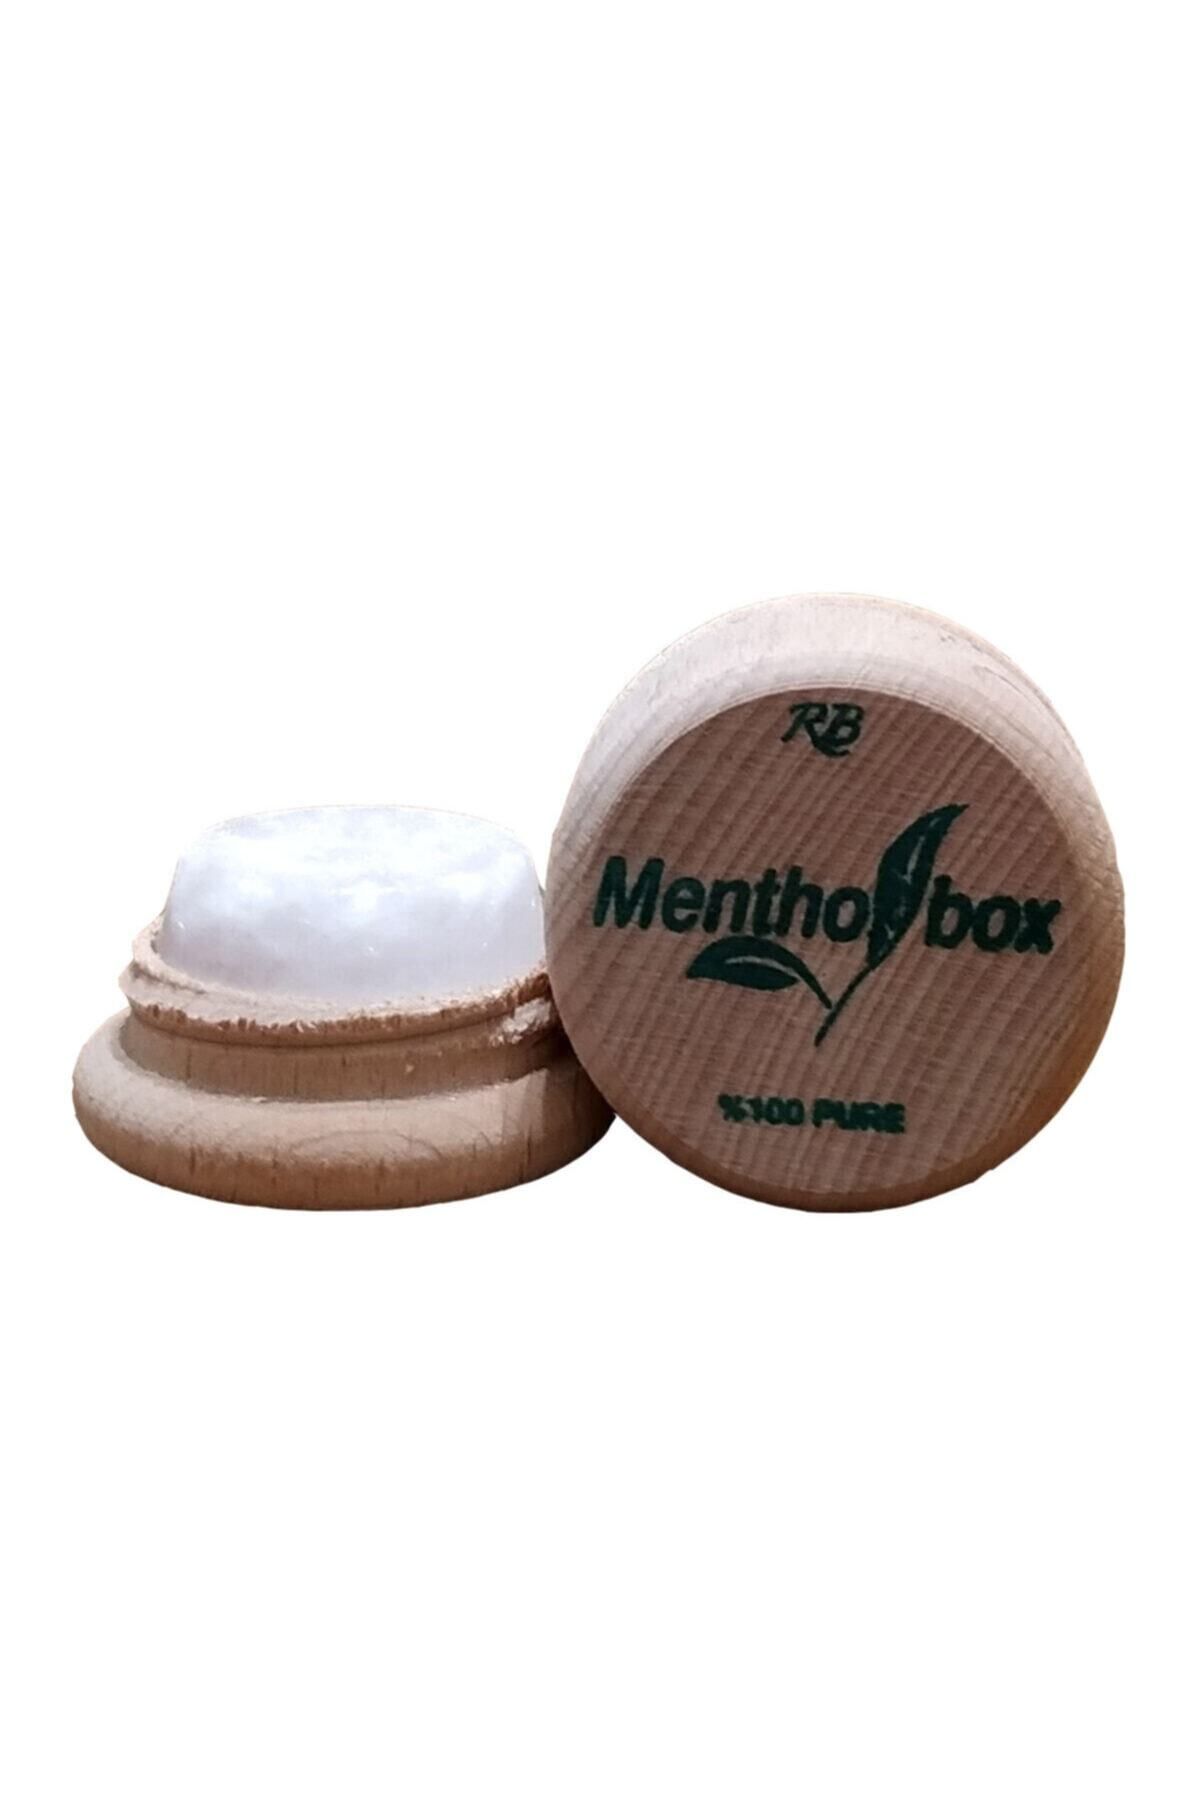 Menthol Box Menthol Taşı Spa Ve Masaj Mentholü 6 gr X 6 Adet